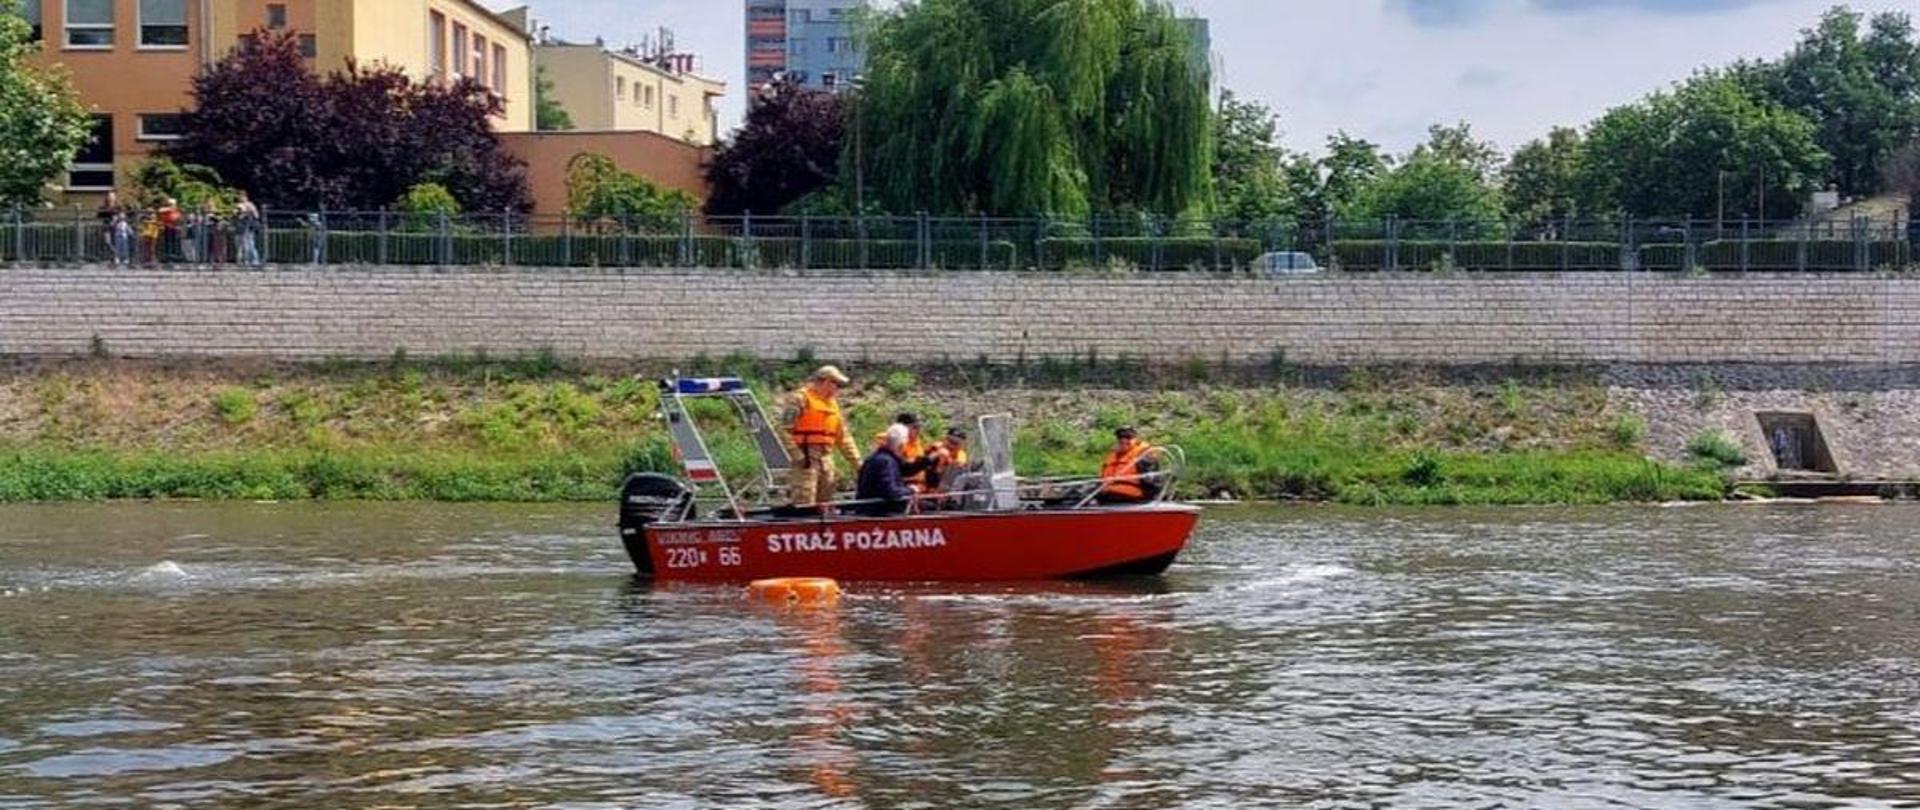 Strażacy Państwowej Straży Pożarnej oraz ochotniczych straży pożarnych ubrani w kamizelki ratownicze siedzą na łodzi podczas szkolenia na patent sternika motorowodnego. Łódź z napisem straż pożarna znajduje się na Odrze w Opolu.